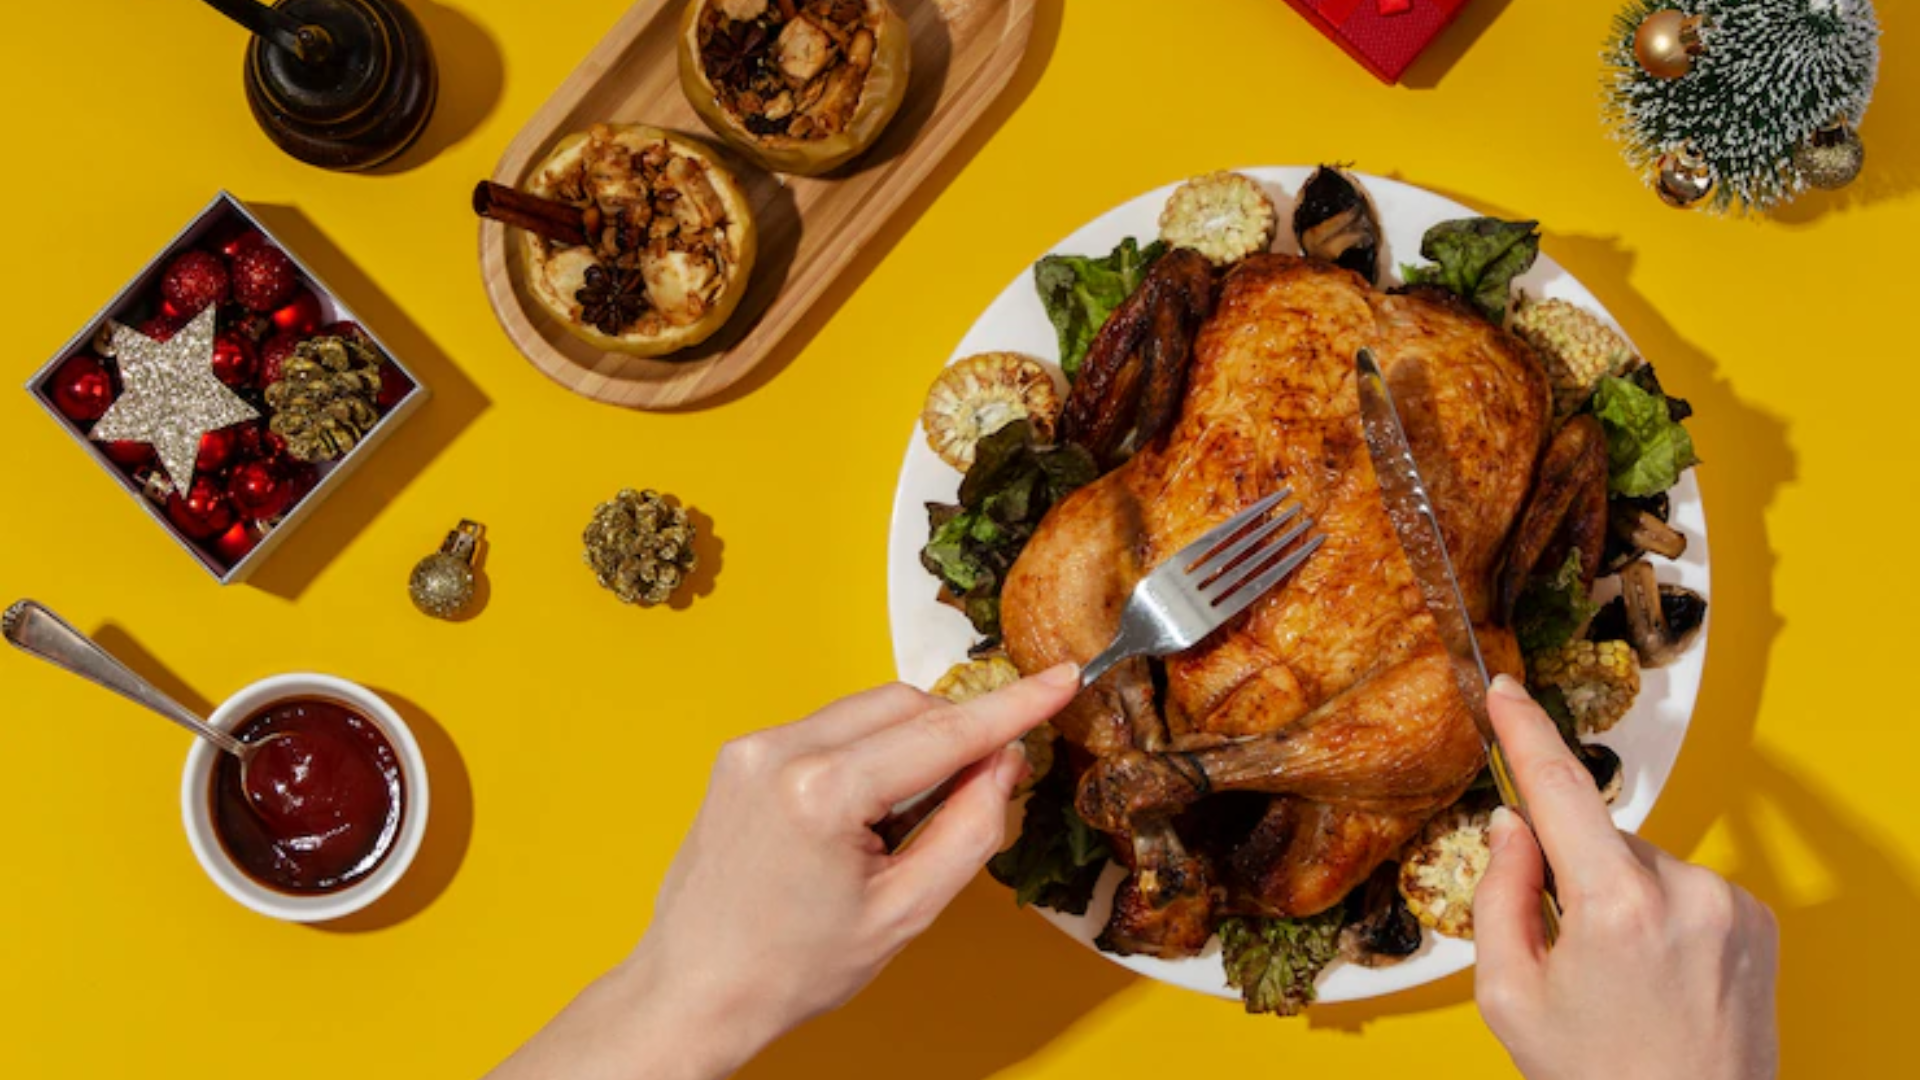 Por favor mira Ejecutar Determinar con precisión Las mejores recetas con pollo para la cena de Año Nuevo - Infobae